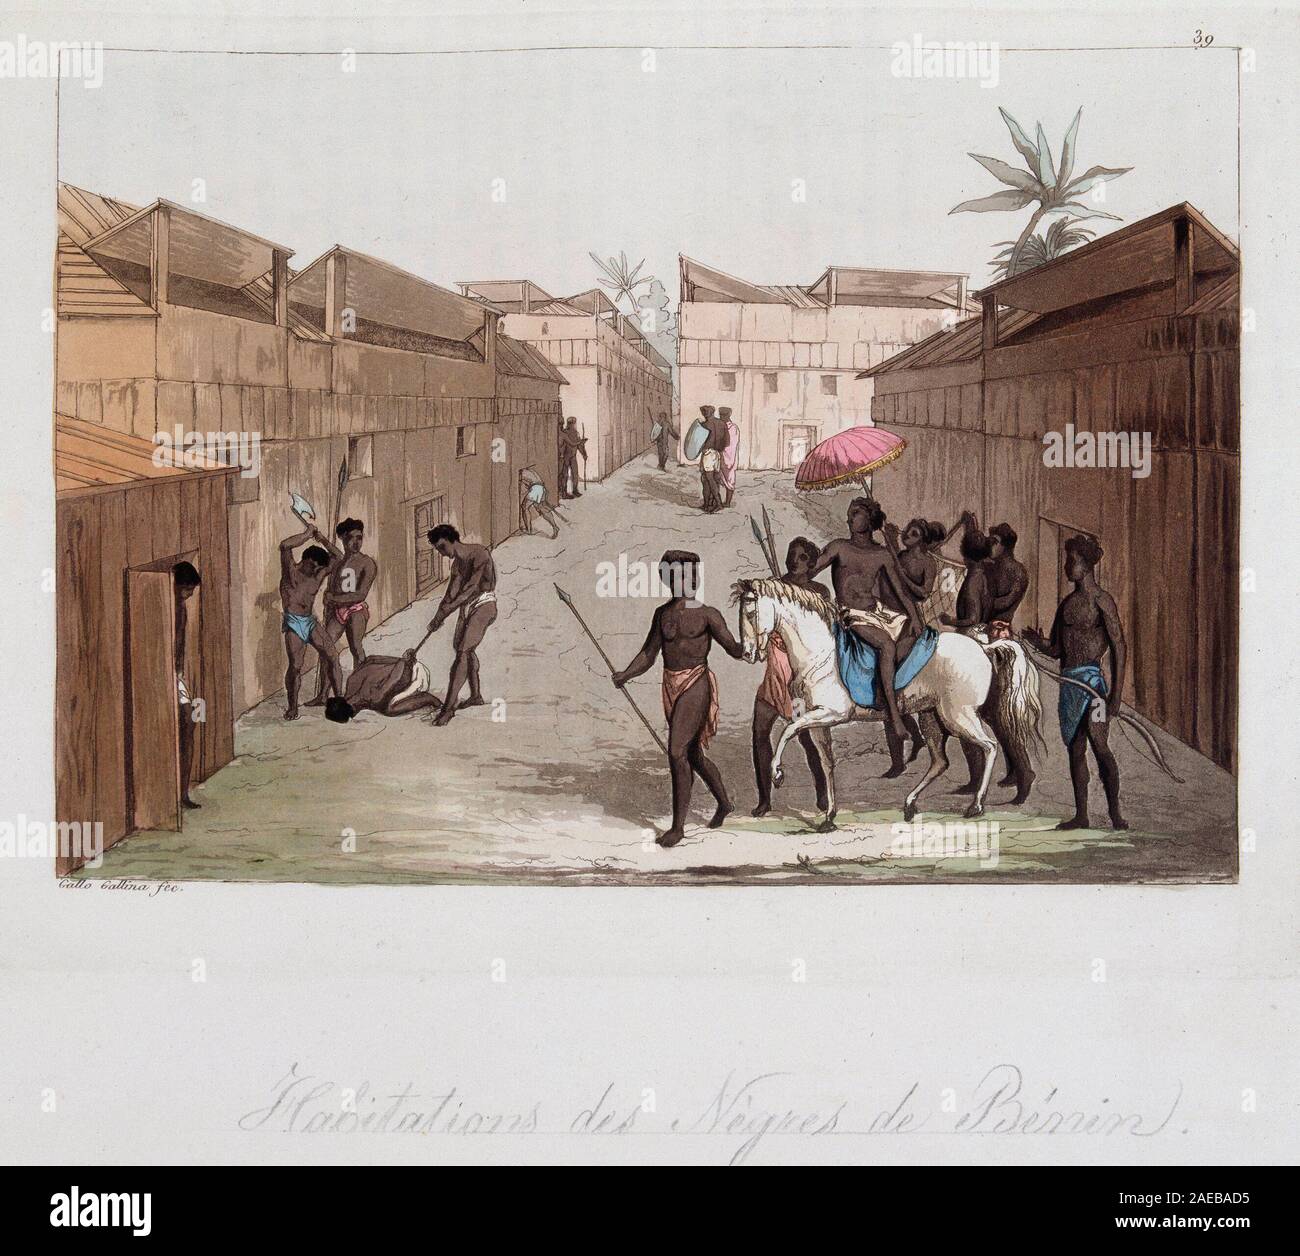 Habitation des negres du Benin (ancien Dahomey) (scene de rue) - in 'Le costume ancien et moderne' par Ferrario, ed Milan, 1819-20 ©/ Stock Photo